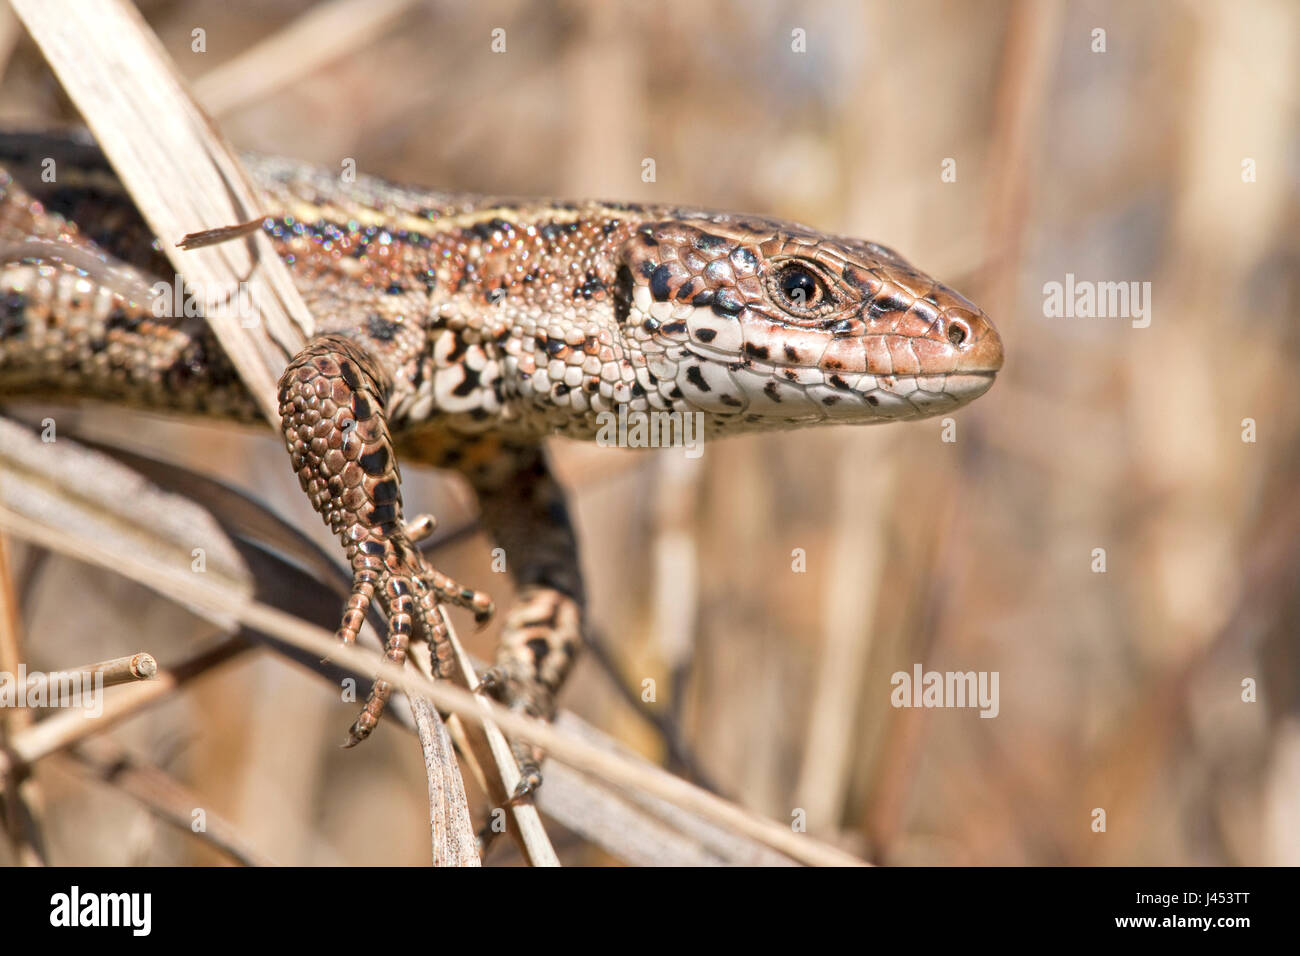 Foto van een levendbarende hagedis klauterend in een pol pijpenstrootje; photo of a common lizard climbing in moorhexe; Stock Photo